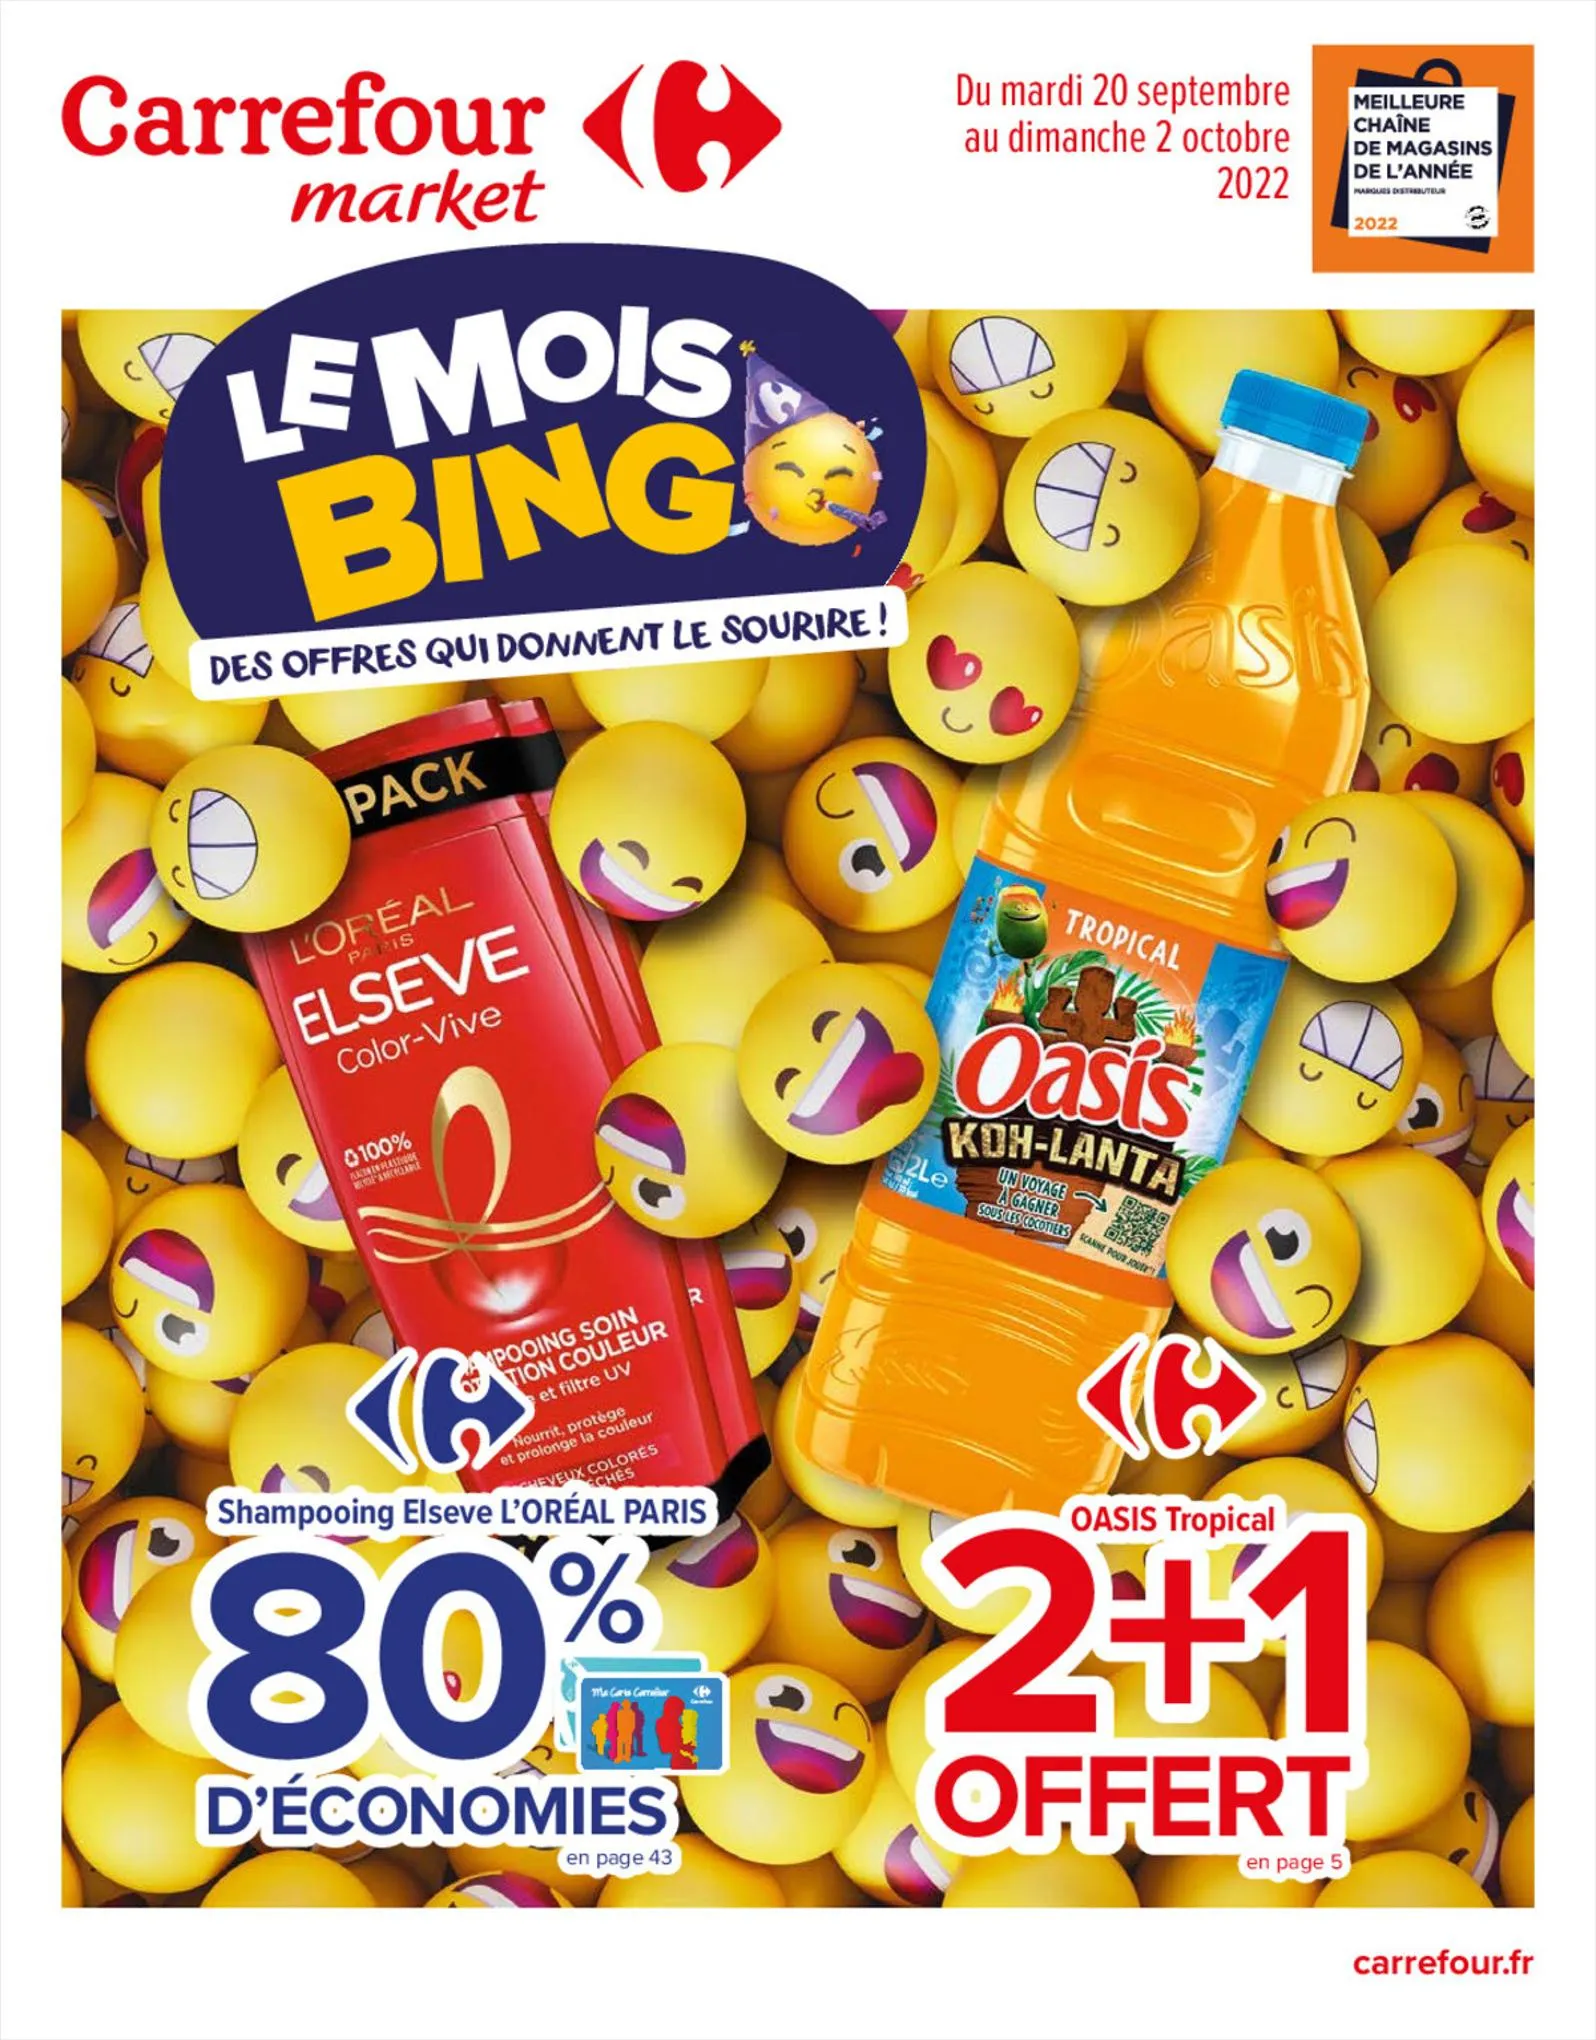 Catalogue  Le mois bingo Beauté, page 00001